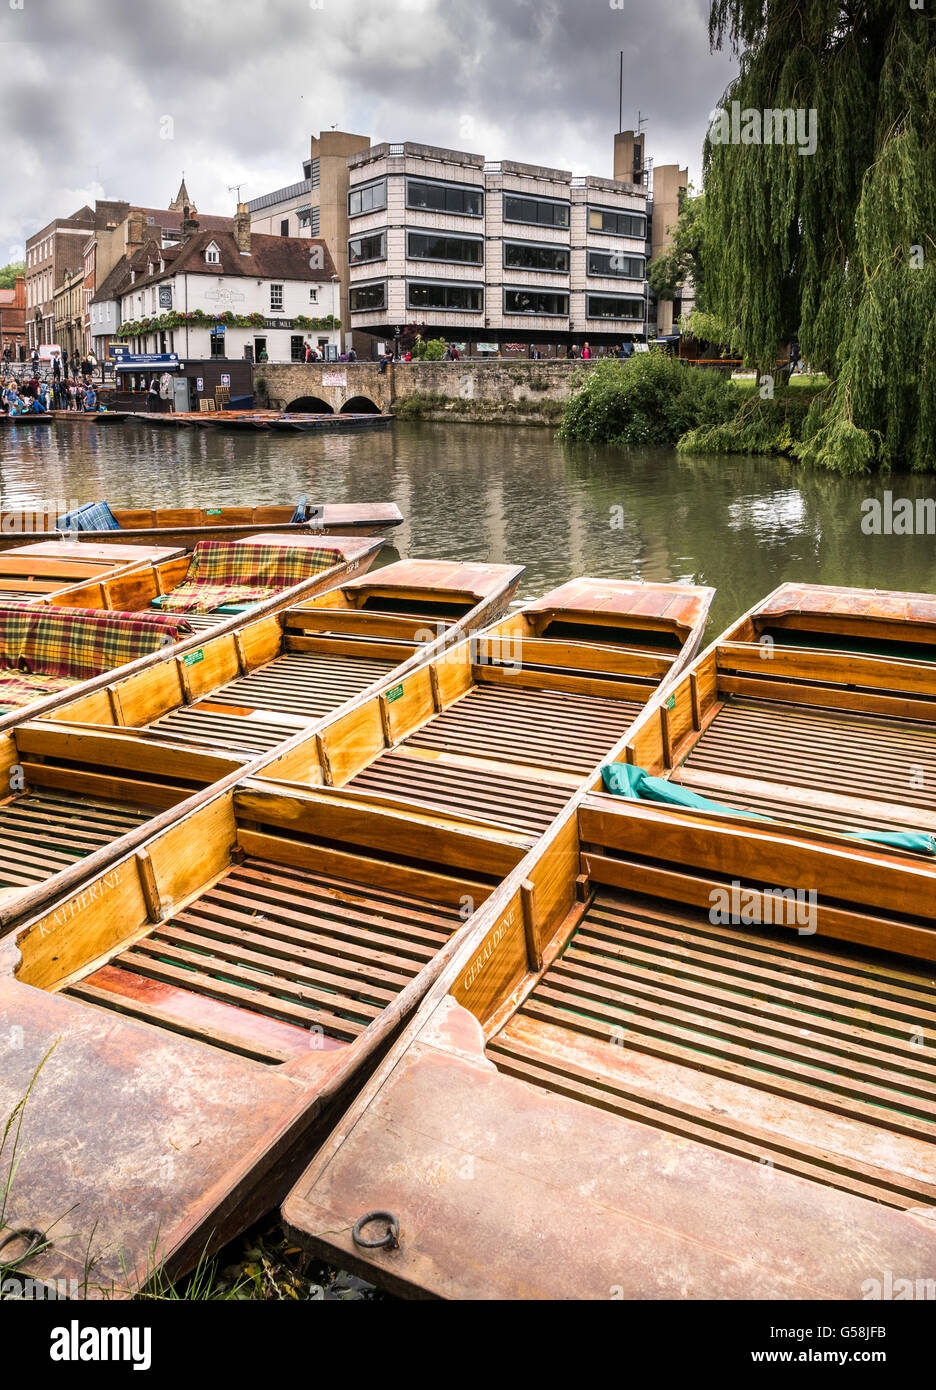 Rangée de punts vide amarré sur la rivière Cam à Cambridge, Angleterre. Banque D'Images